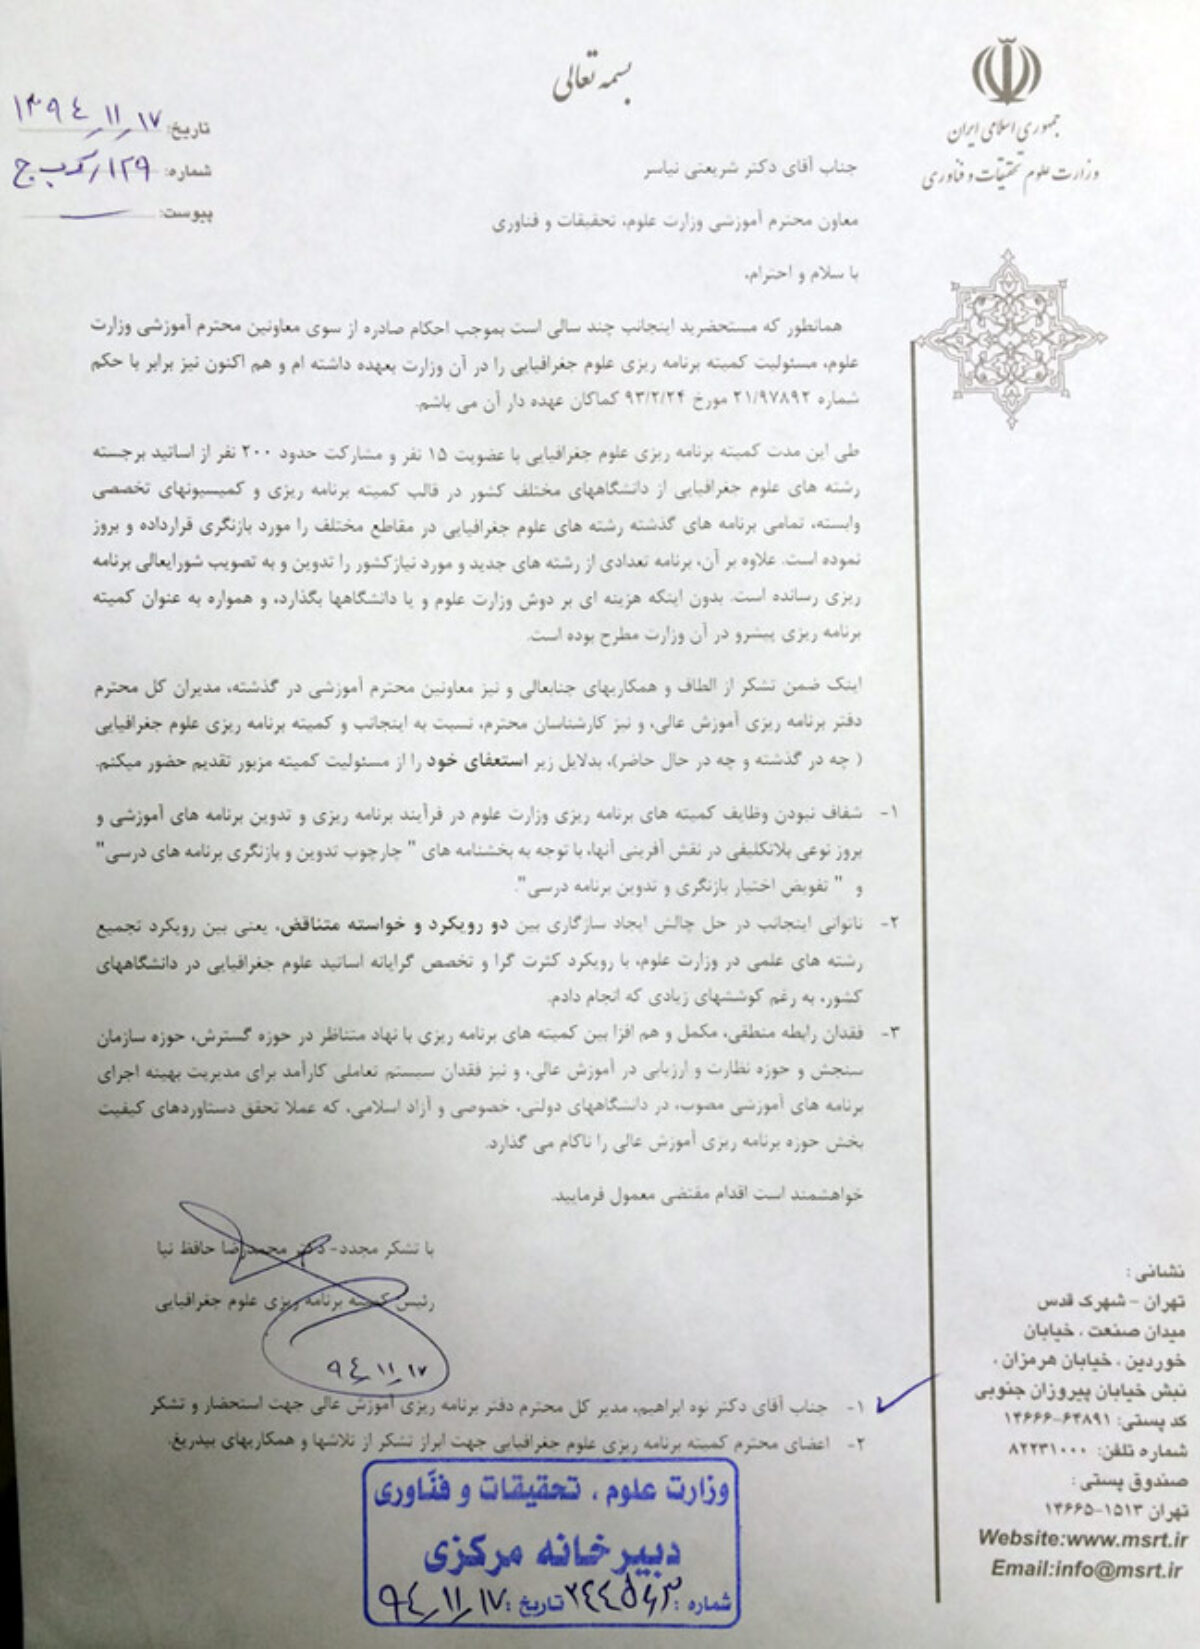 تصویر استعفای اینجانب از کمیته برنامه ریزی در وزارت علوم